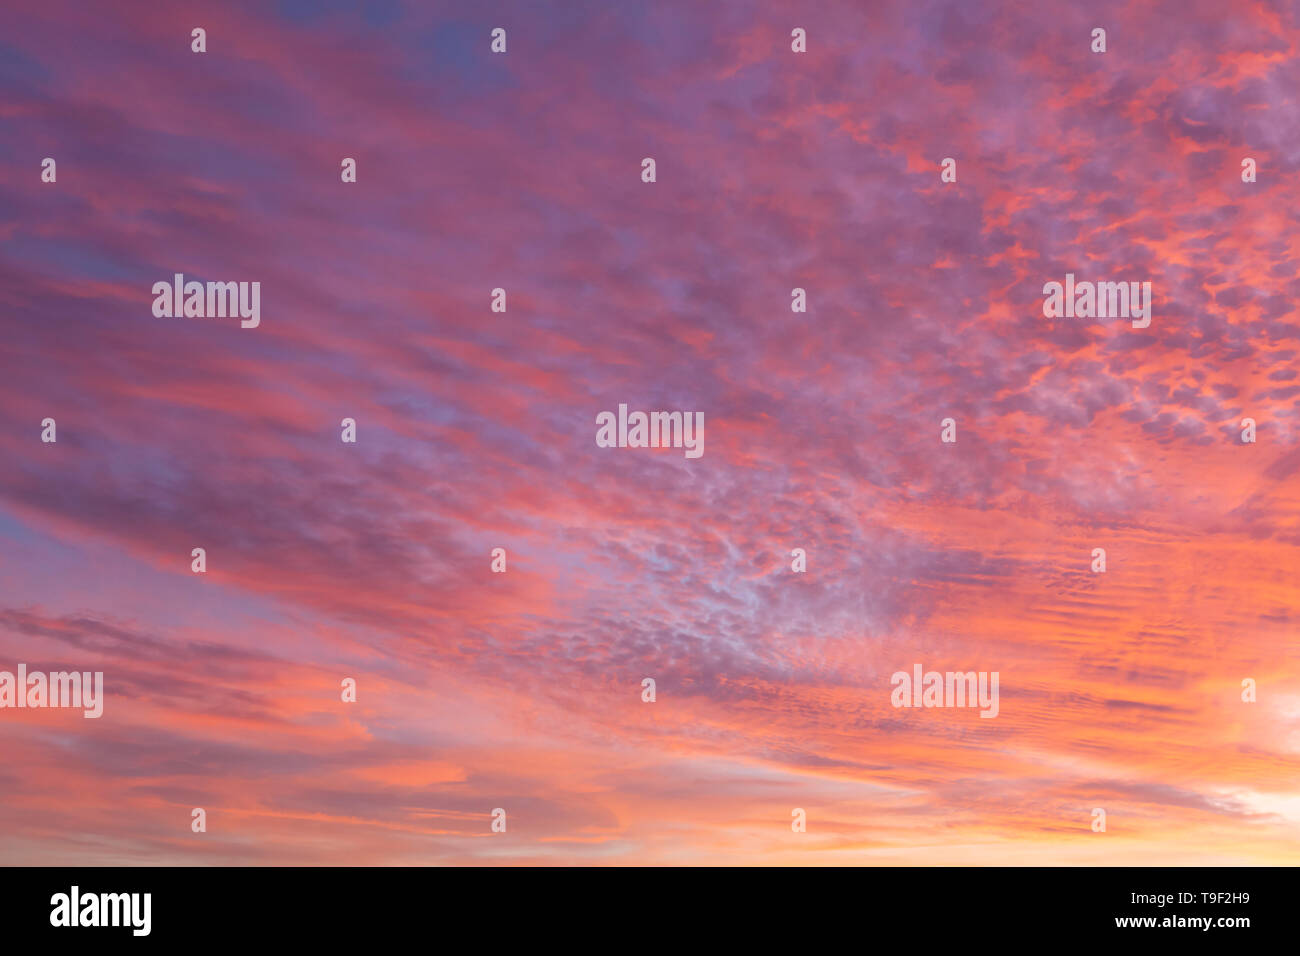 Sonnenuntergang rosa Himmel mit erstaunlichen rosa und rote Wolken. Stockfoto